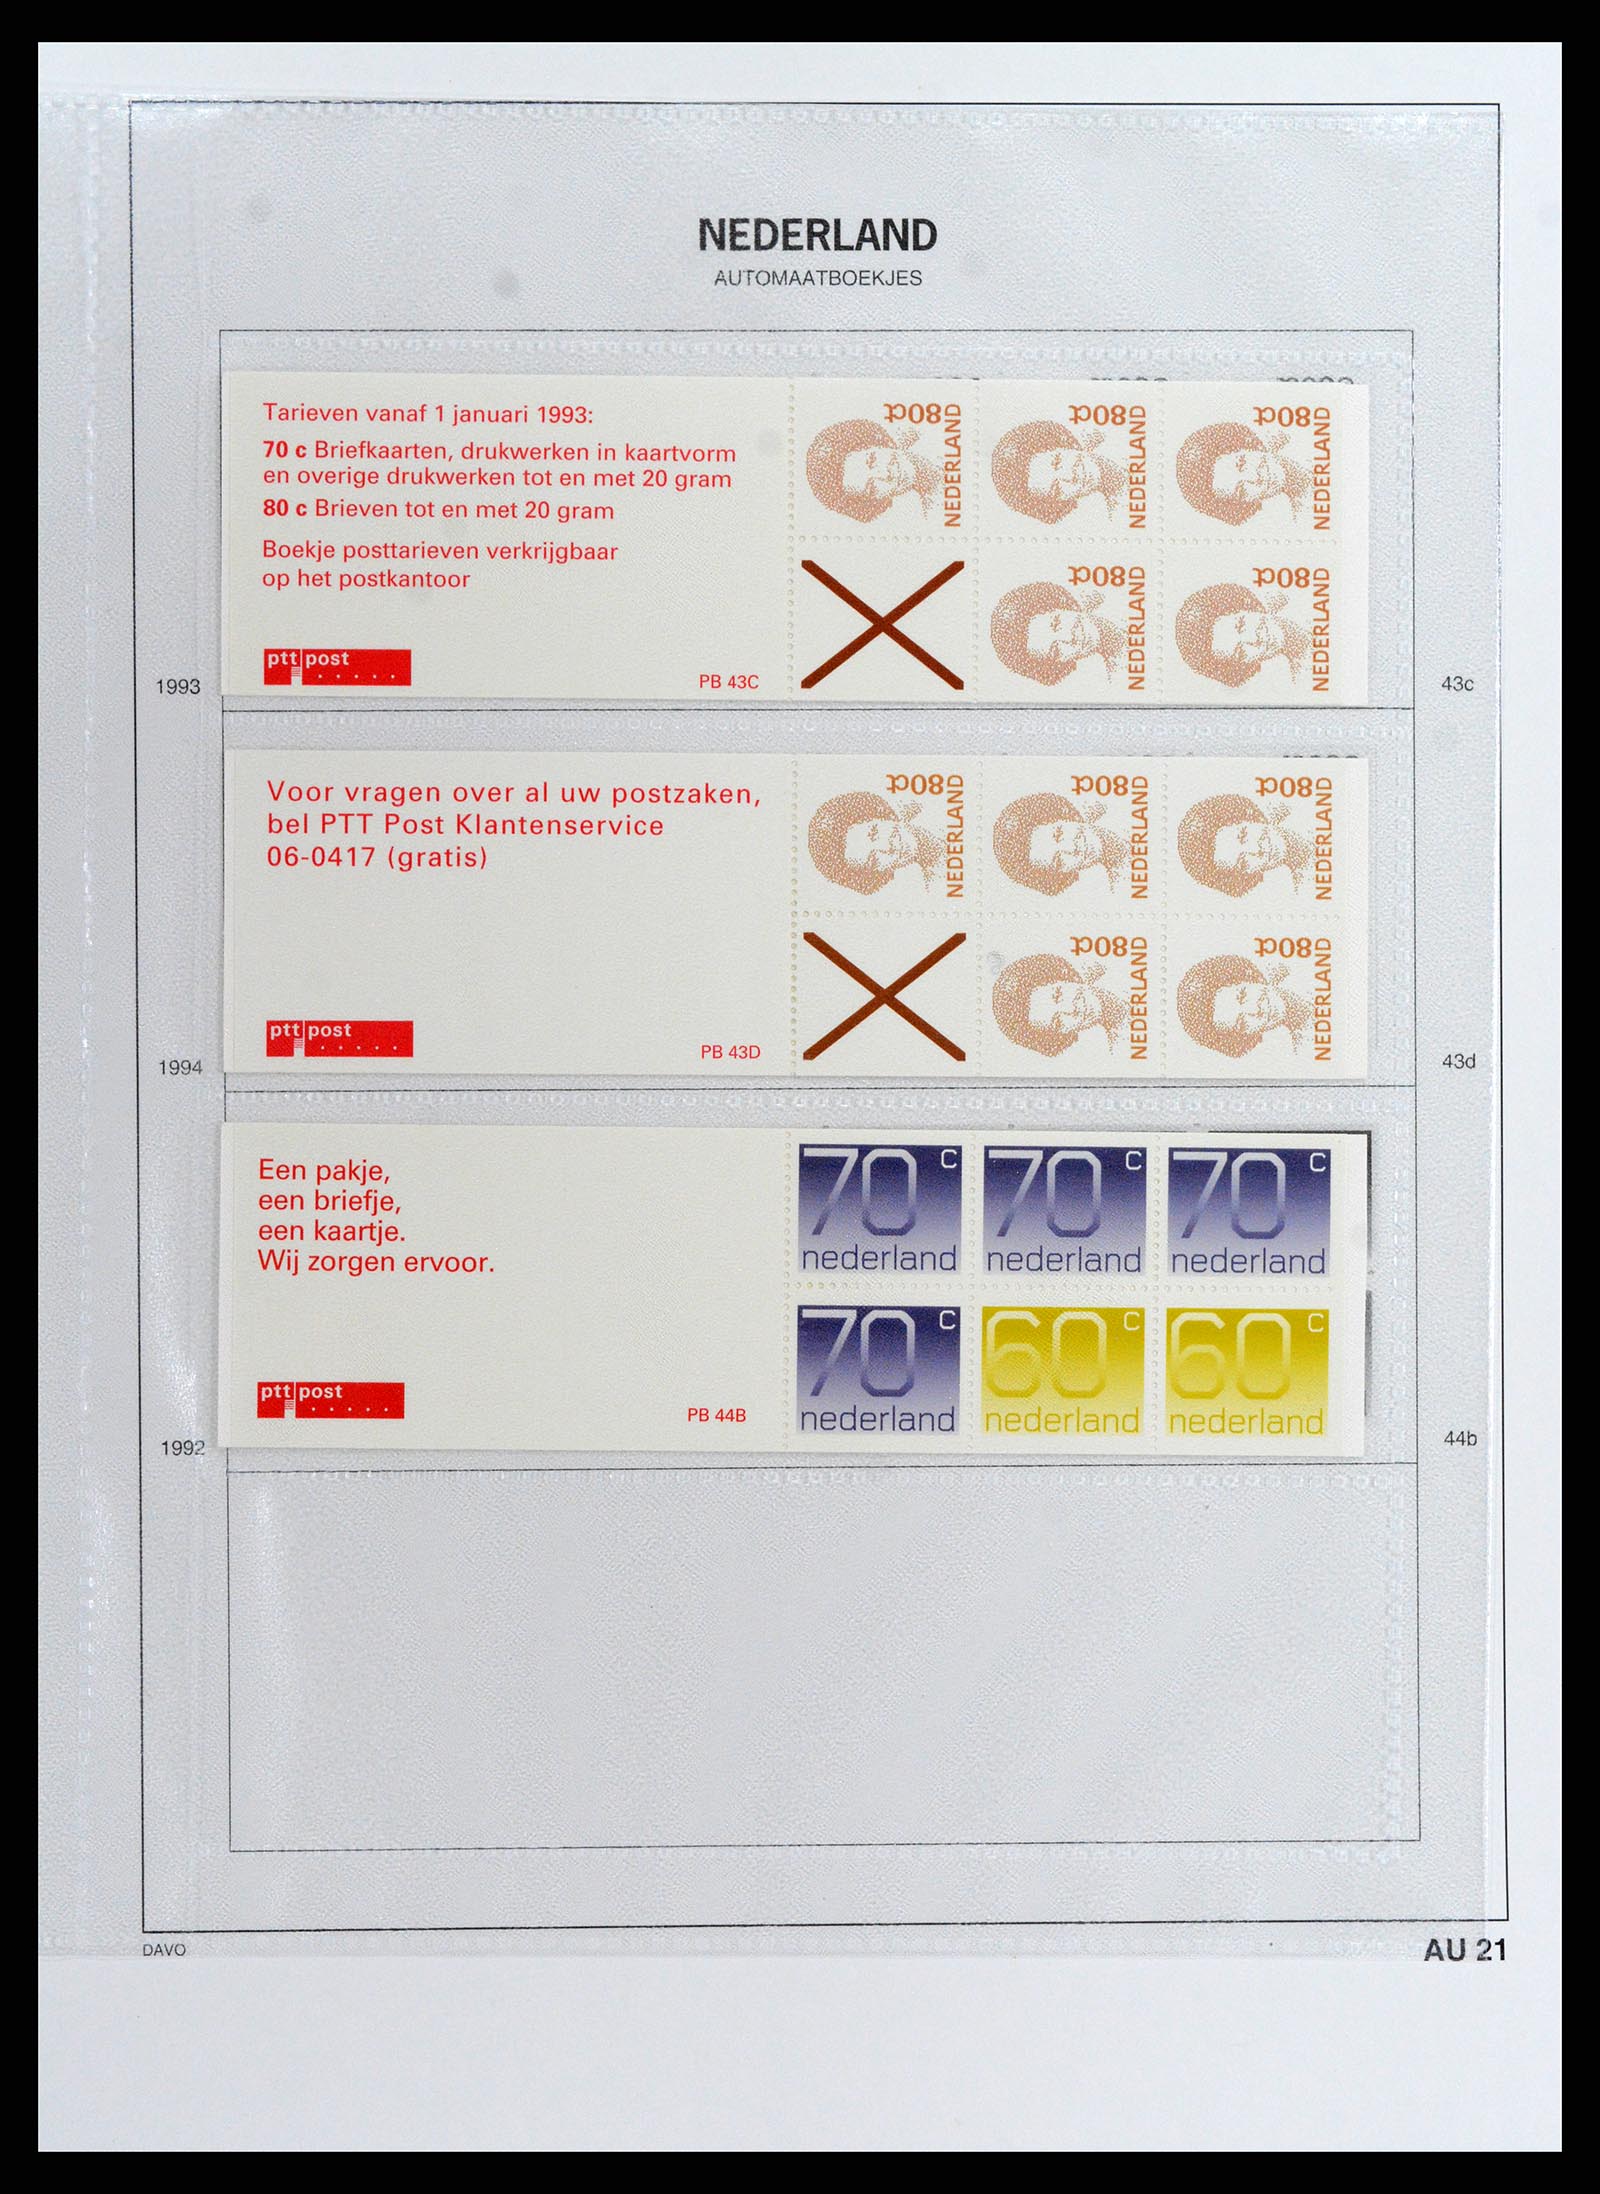 37871 031 - Stamp Collection 37871 Netherlands stampbooklets 1964-2000.